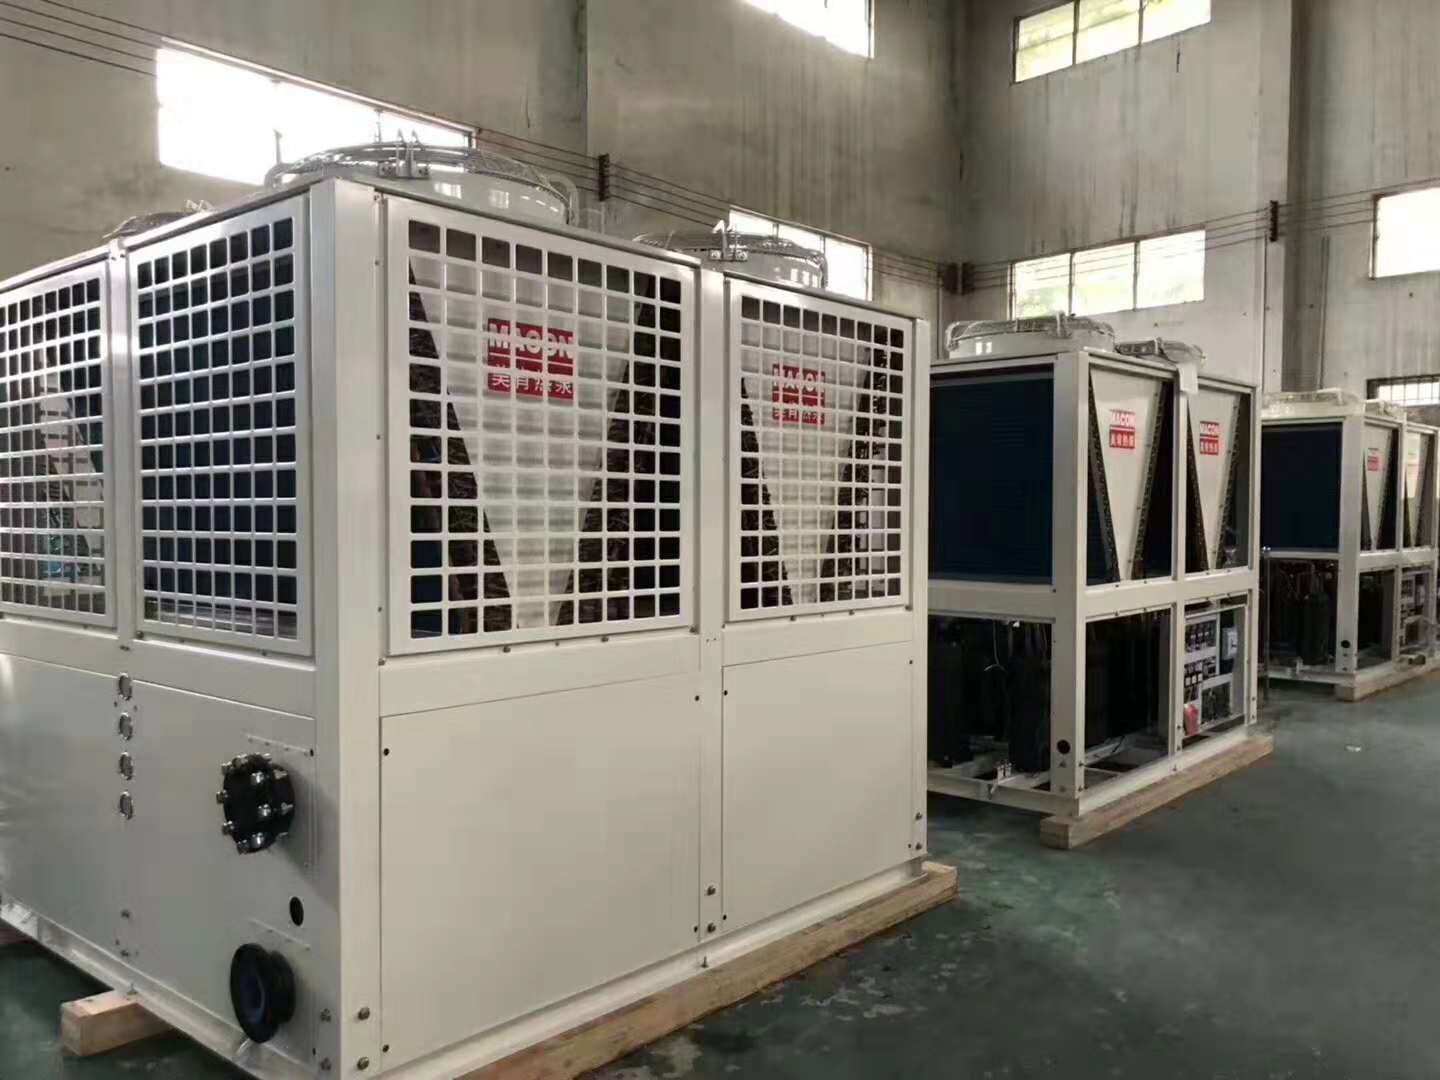 空气源热泵成为填补集中供暖重要力量，济南将对安装用户进行补贴